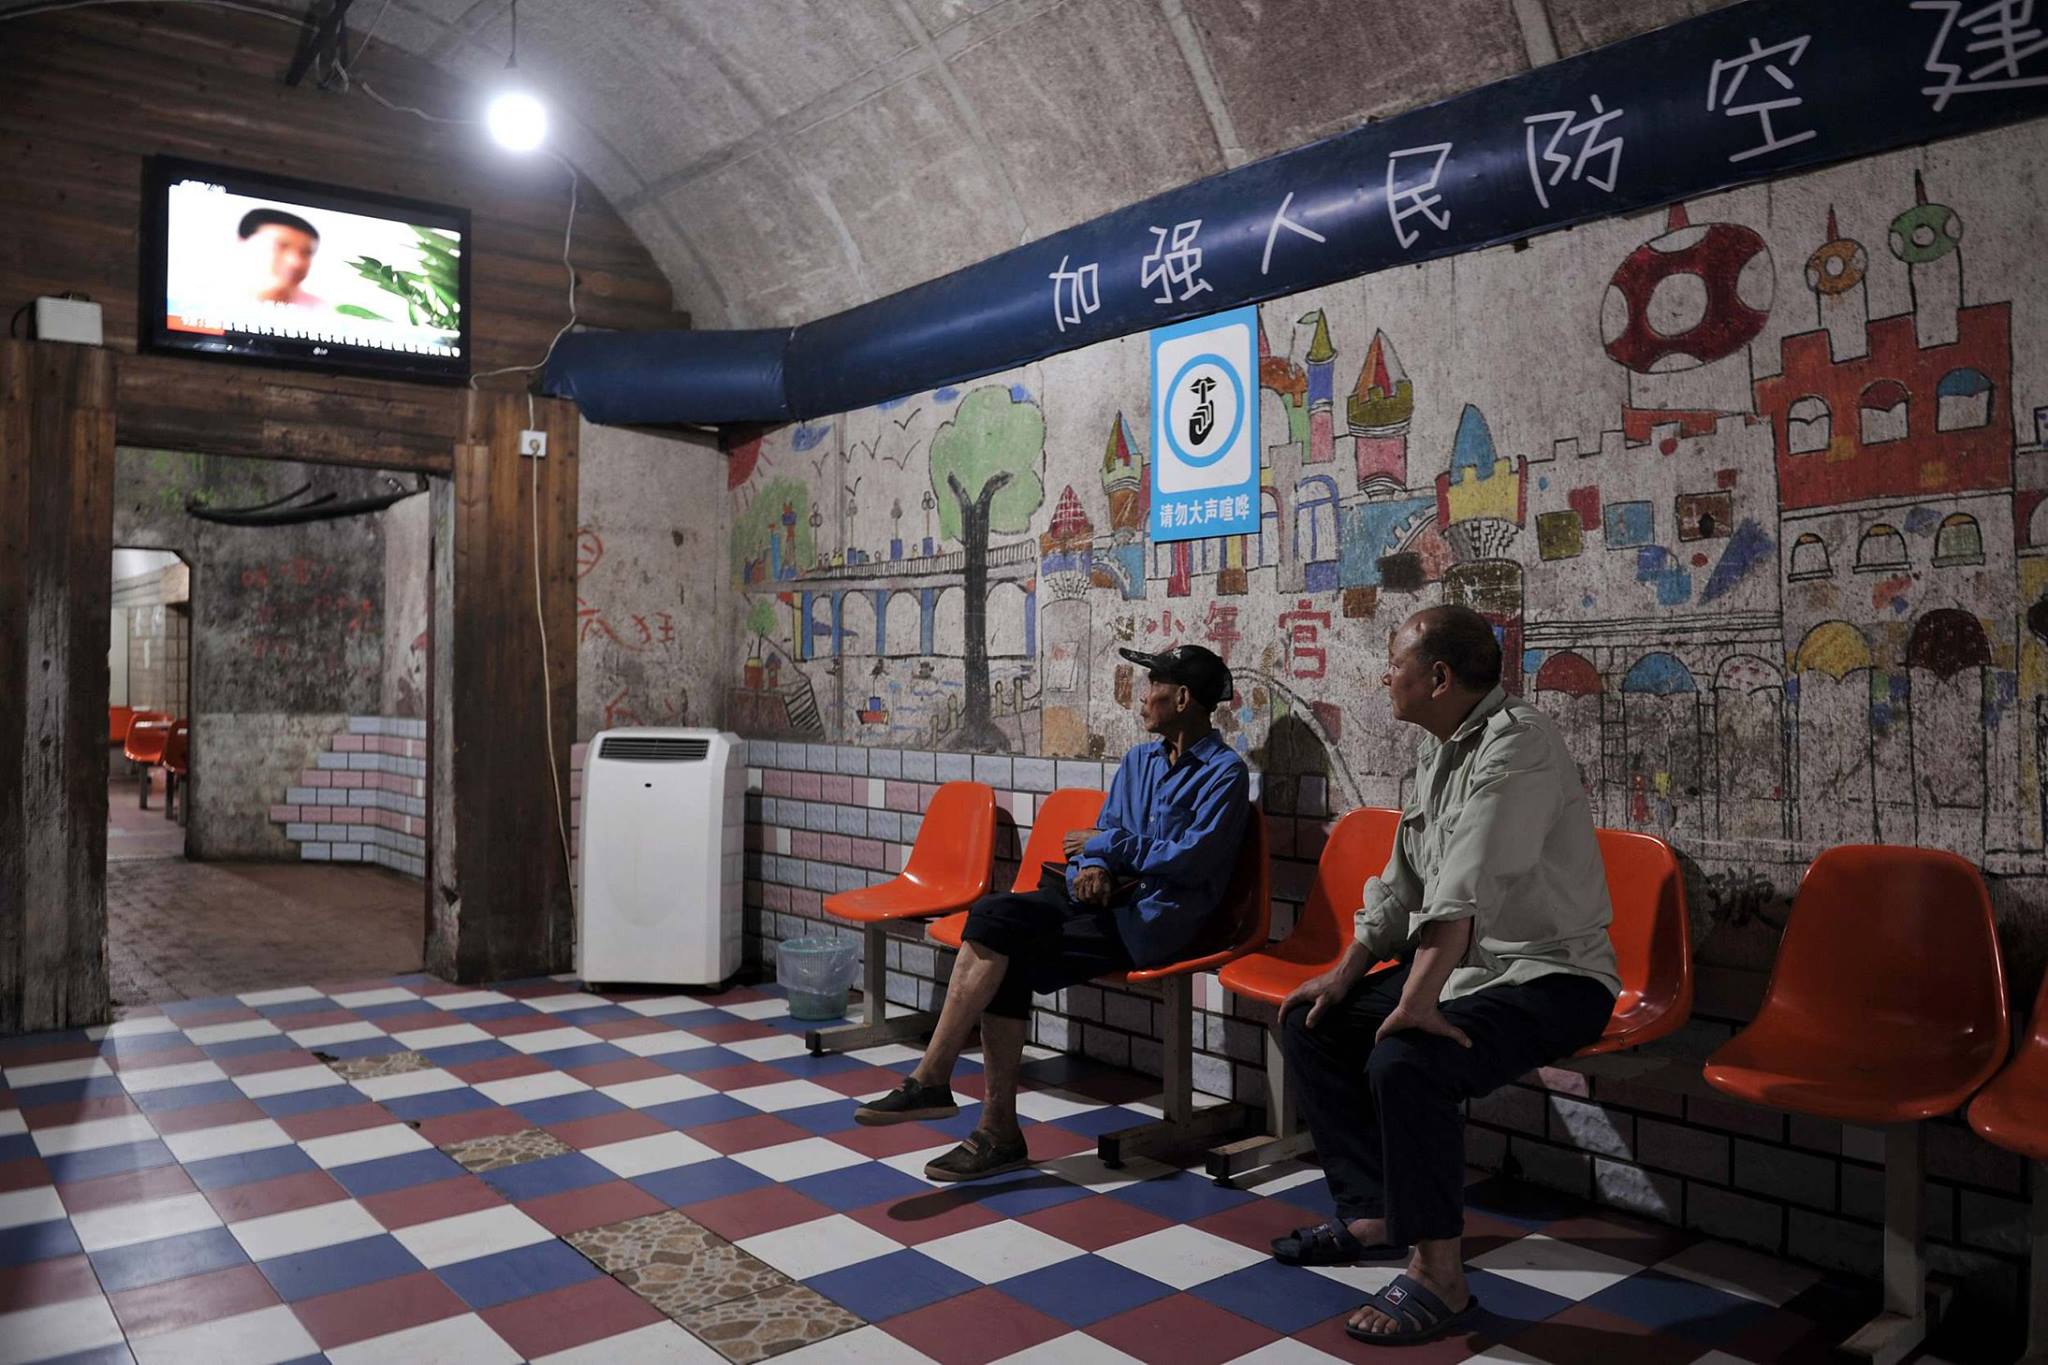 หลายเมืองในจีน เปิดหลุมหลบภัยทางอากาศ ให้ประชาชนได้มาอาศัยหลบร้อนแบบฟรีๆ 

นี่คื…